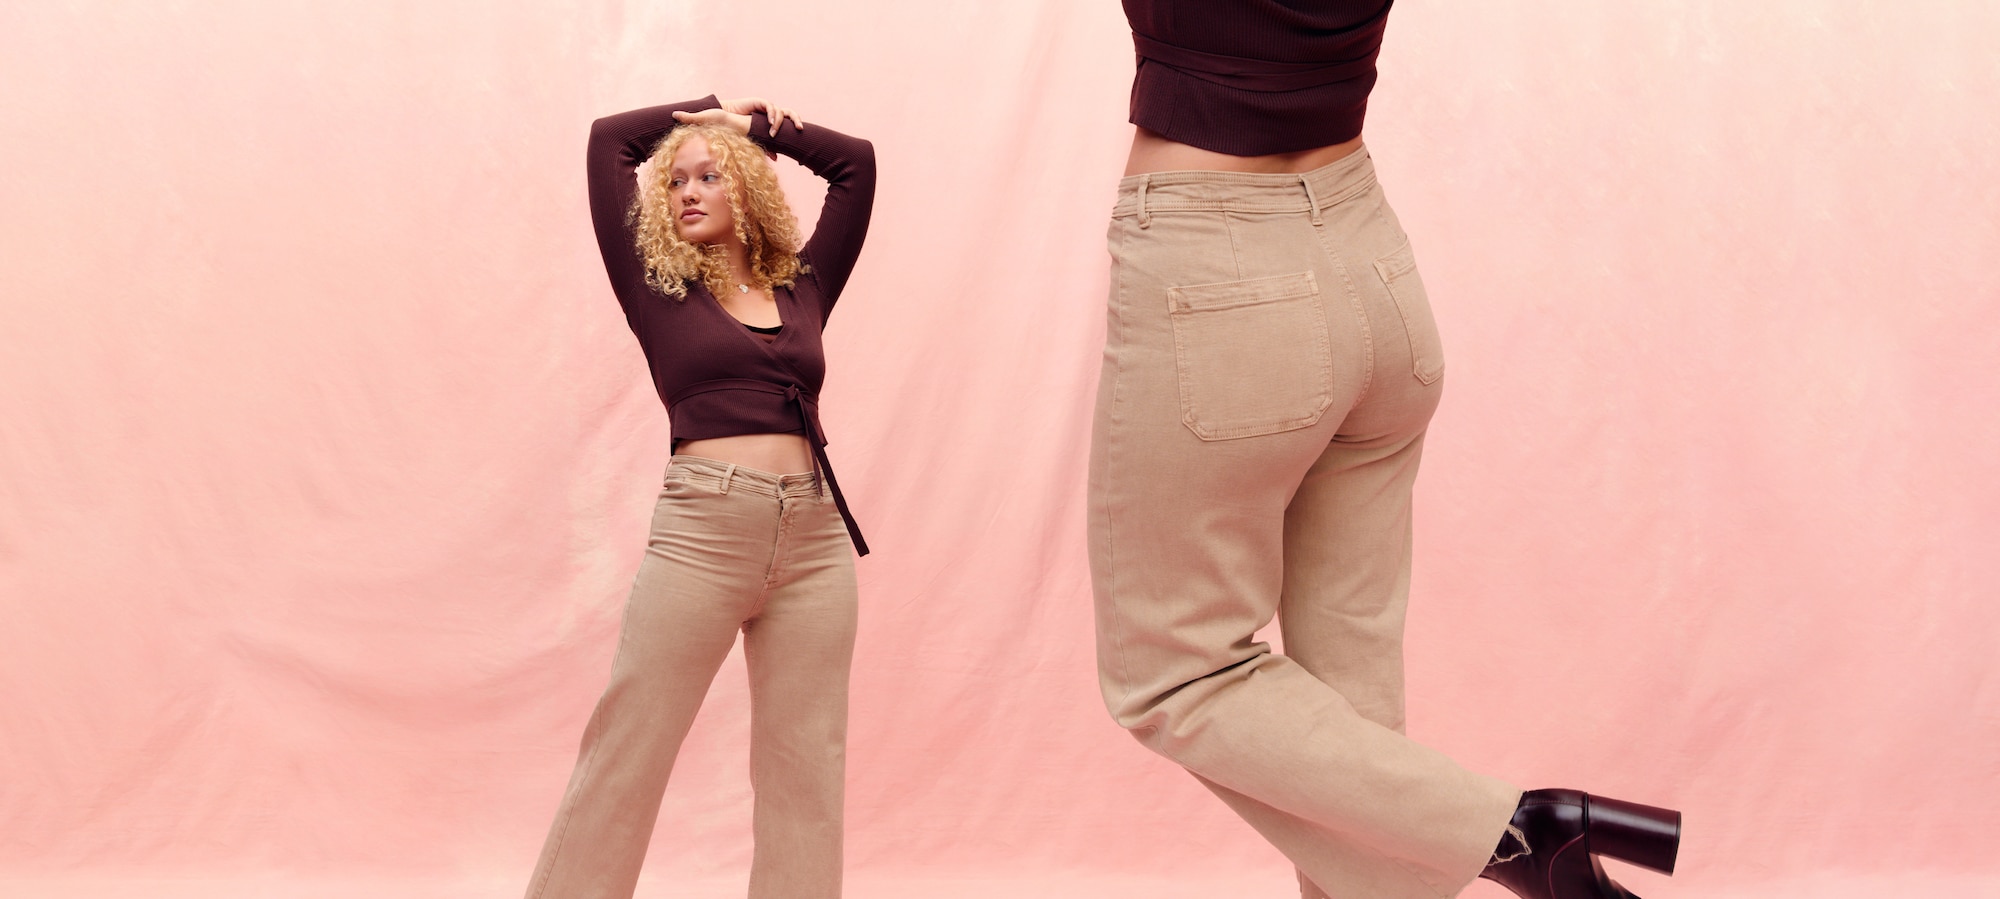 Jeans-Fits für Tall Girls mit Kurven Wide Leg oder Cropped Flared?